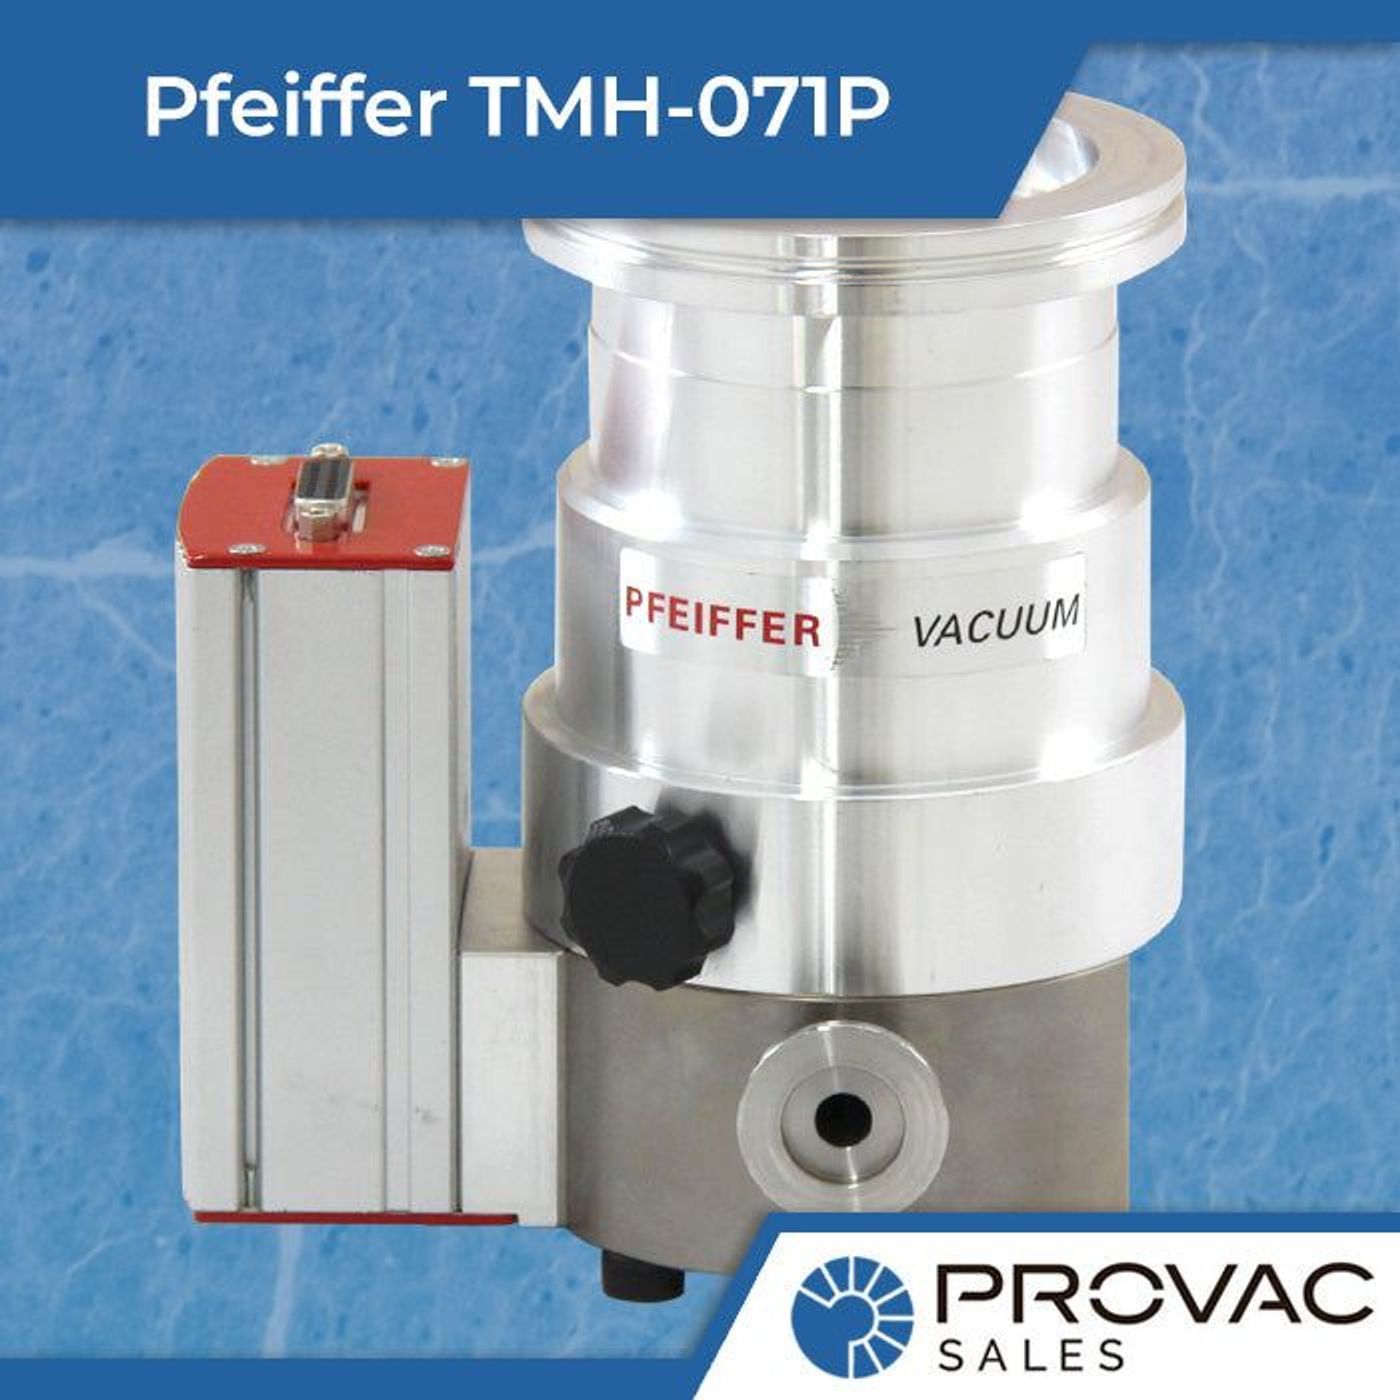 Pfeiffer TMH-071P Turbo Drag Pump